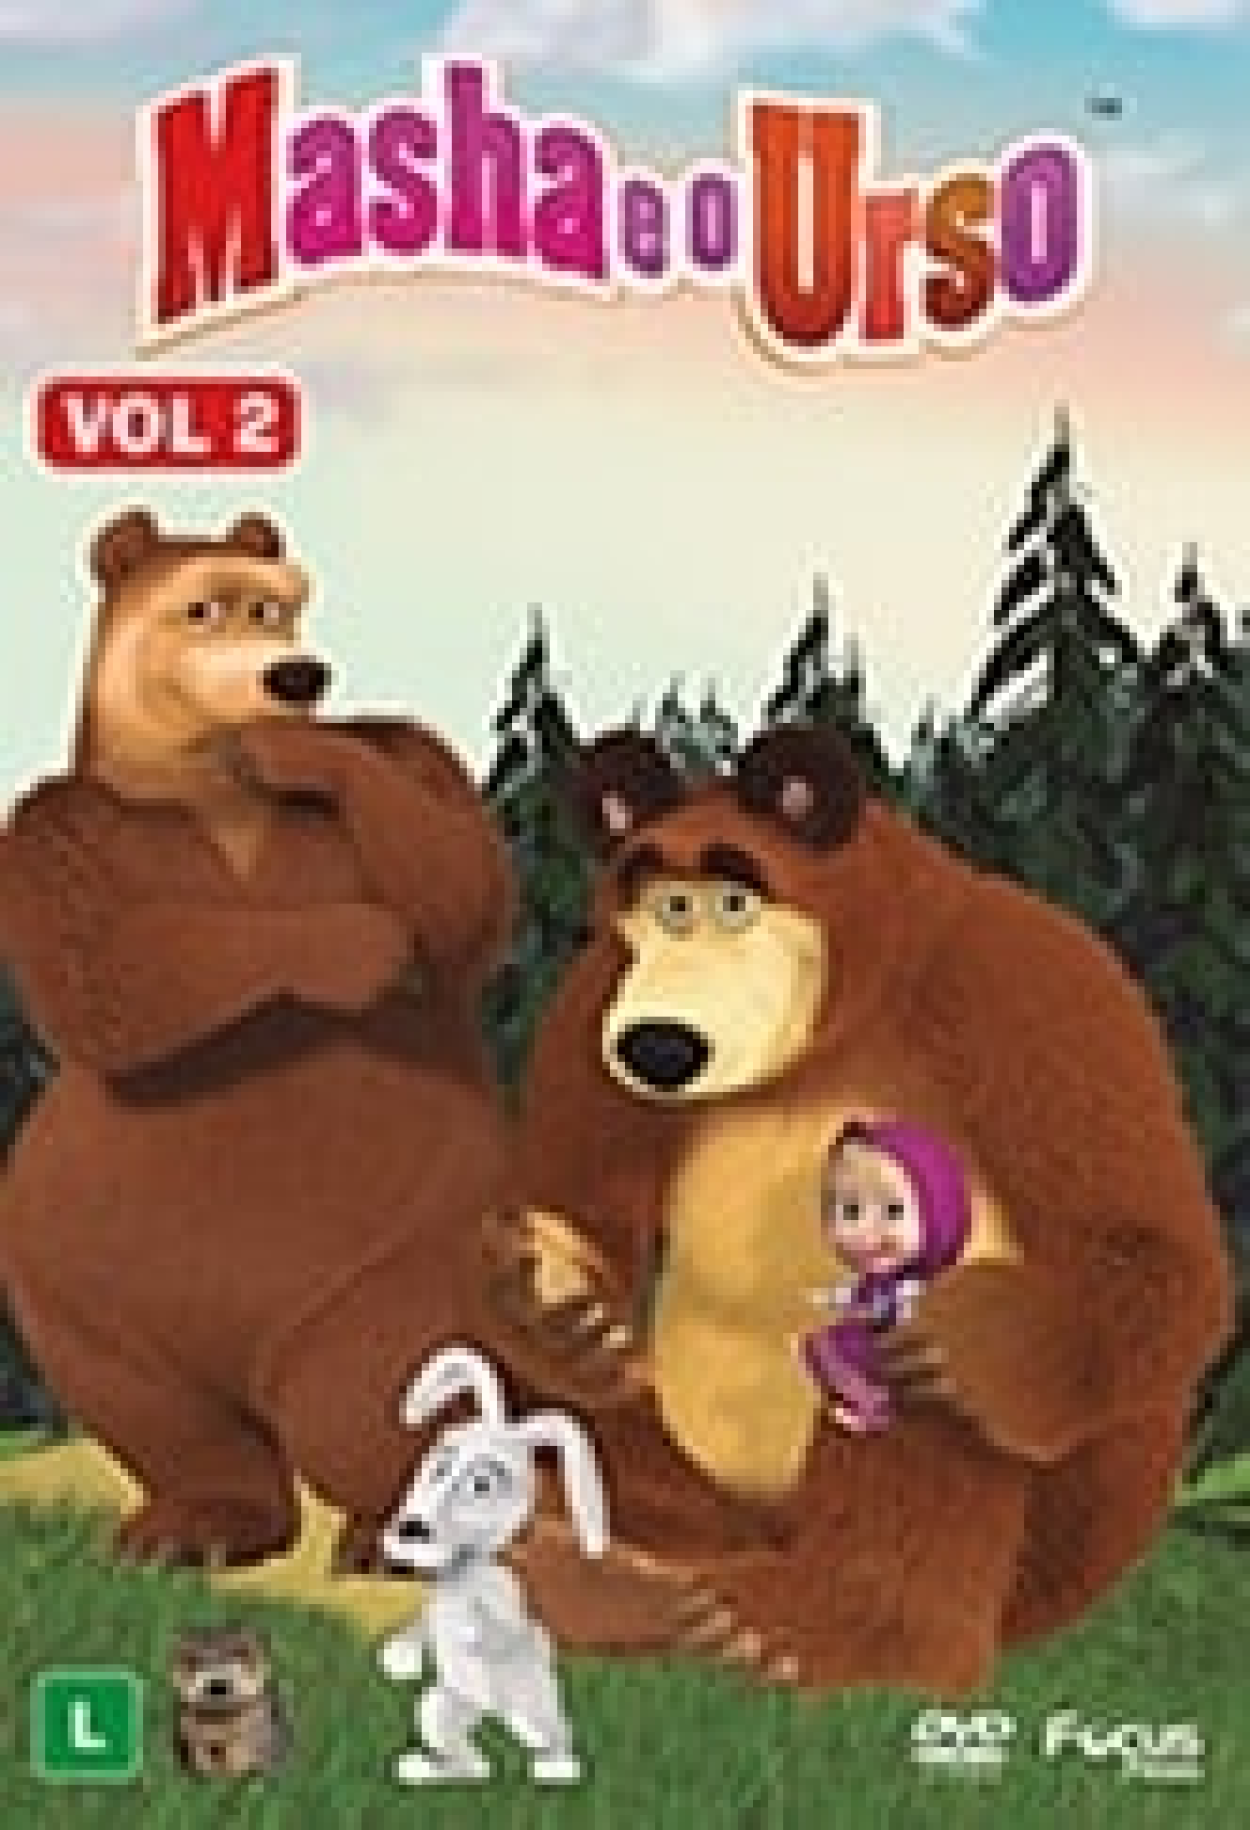 Masha e o Urso - O Filme  Trailer Oficial 